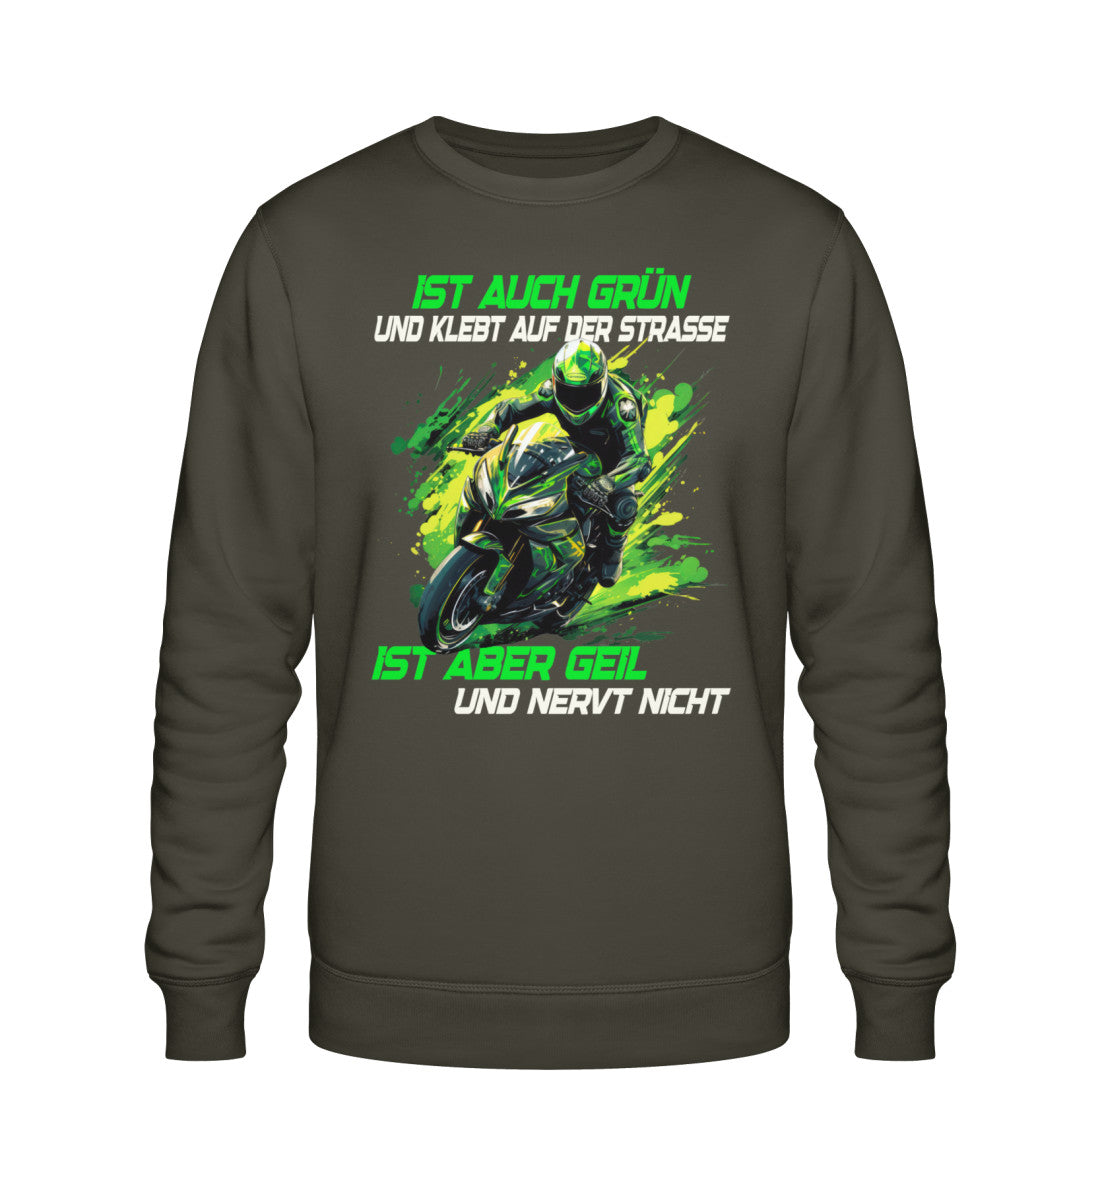 Ein Biker Sweatshirt für Motorradfahrer von Wingbikers mit dem Aufdruck, Ist auch grün und klebt auf der Straße, ist aber geil und nervt nicht! - in khaki grün.